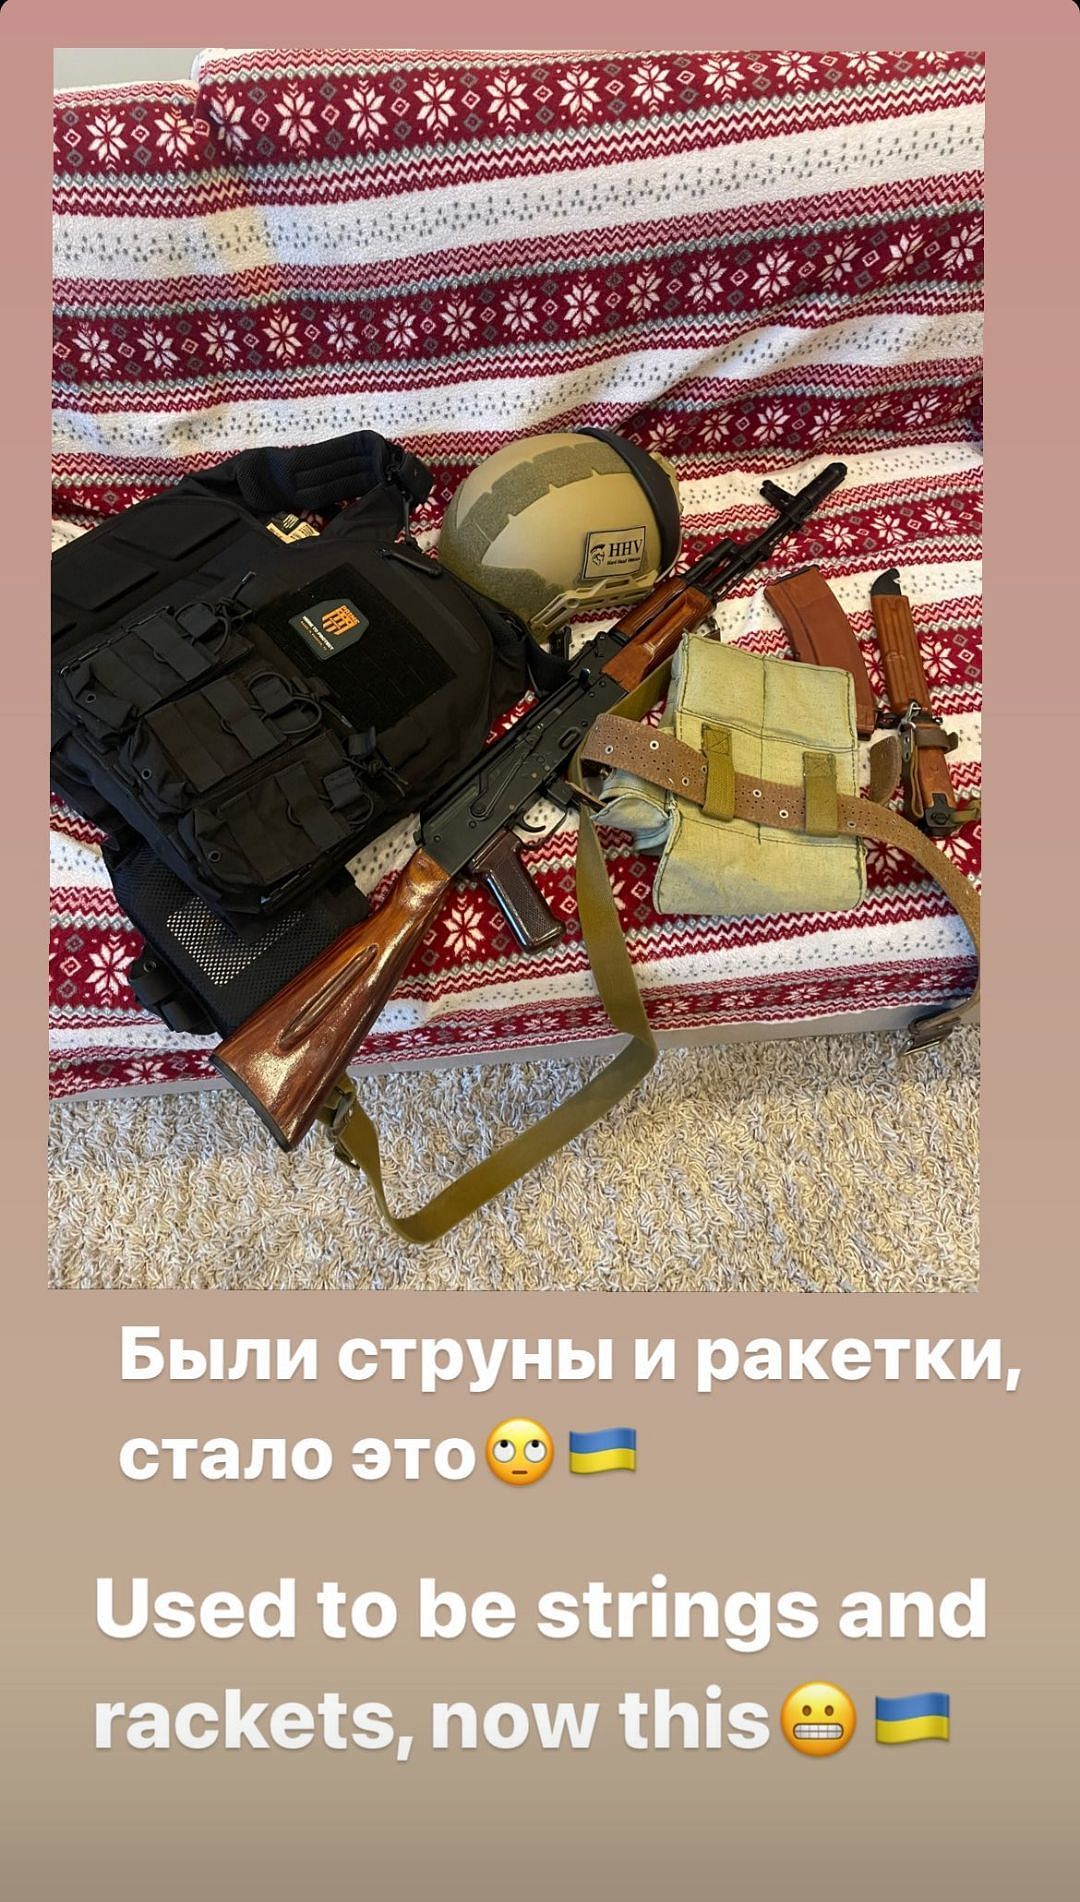 Screen grab from Alexandr Dolgopolov&#039;s Instagram story